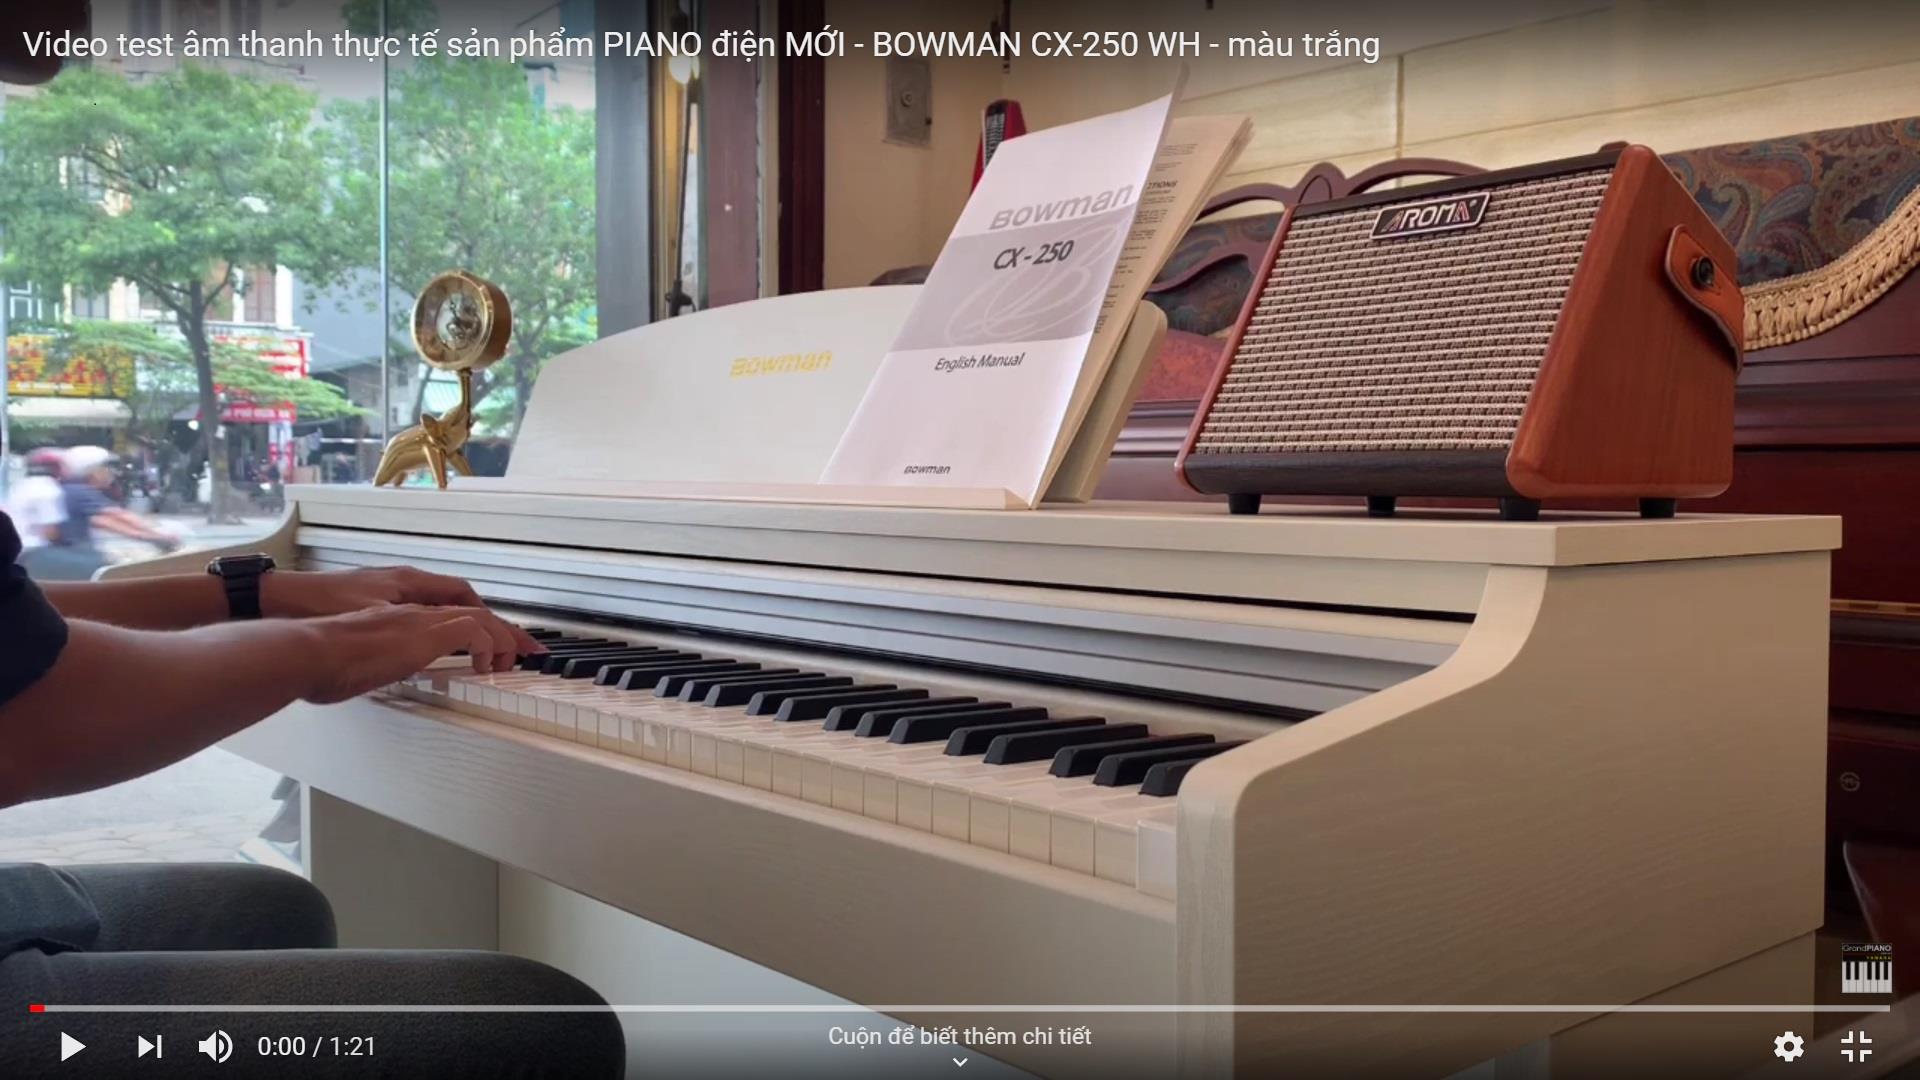 Video test âm thanh thực tế sản phẩm PIANO điện MỚI - BOWMAN CX-250 WH - màu trắng